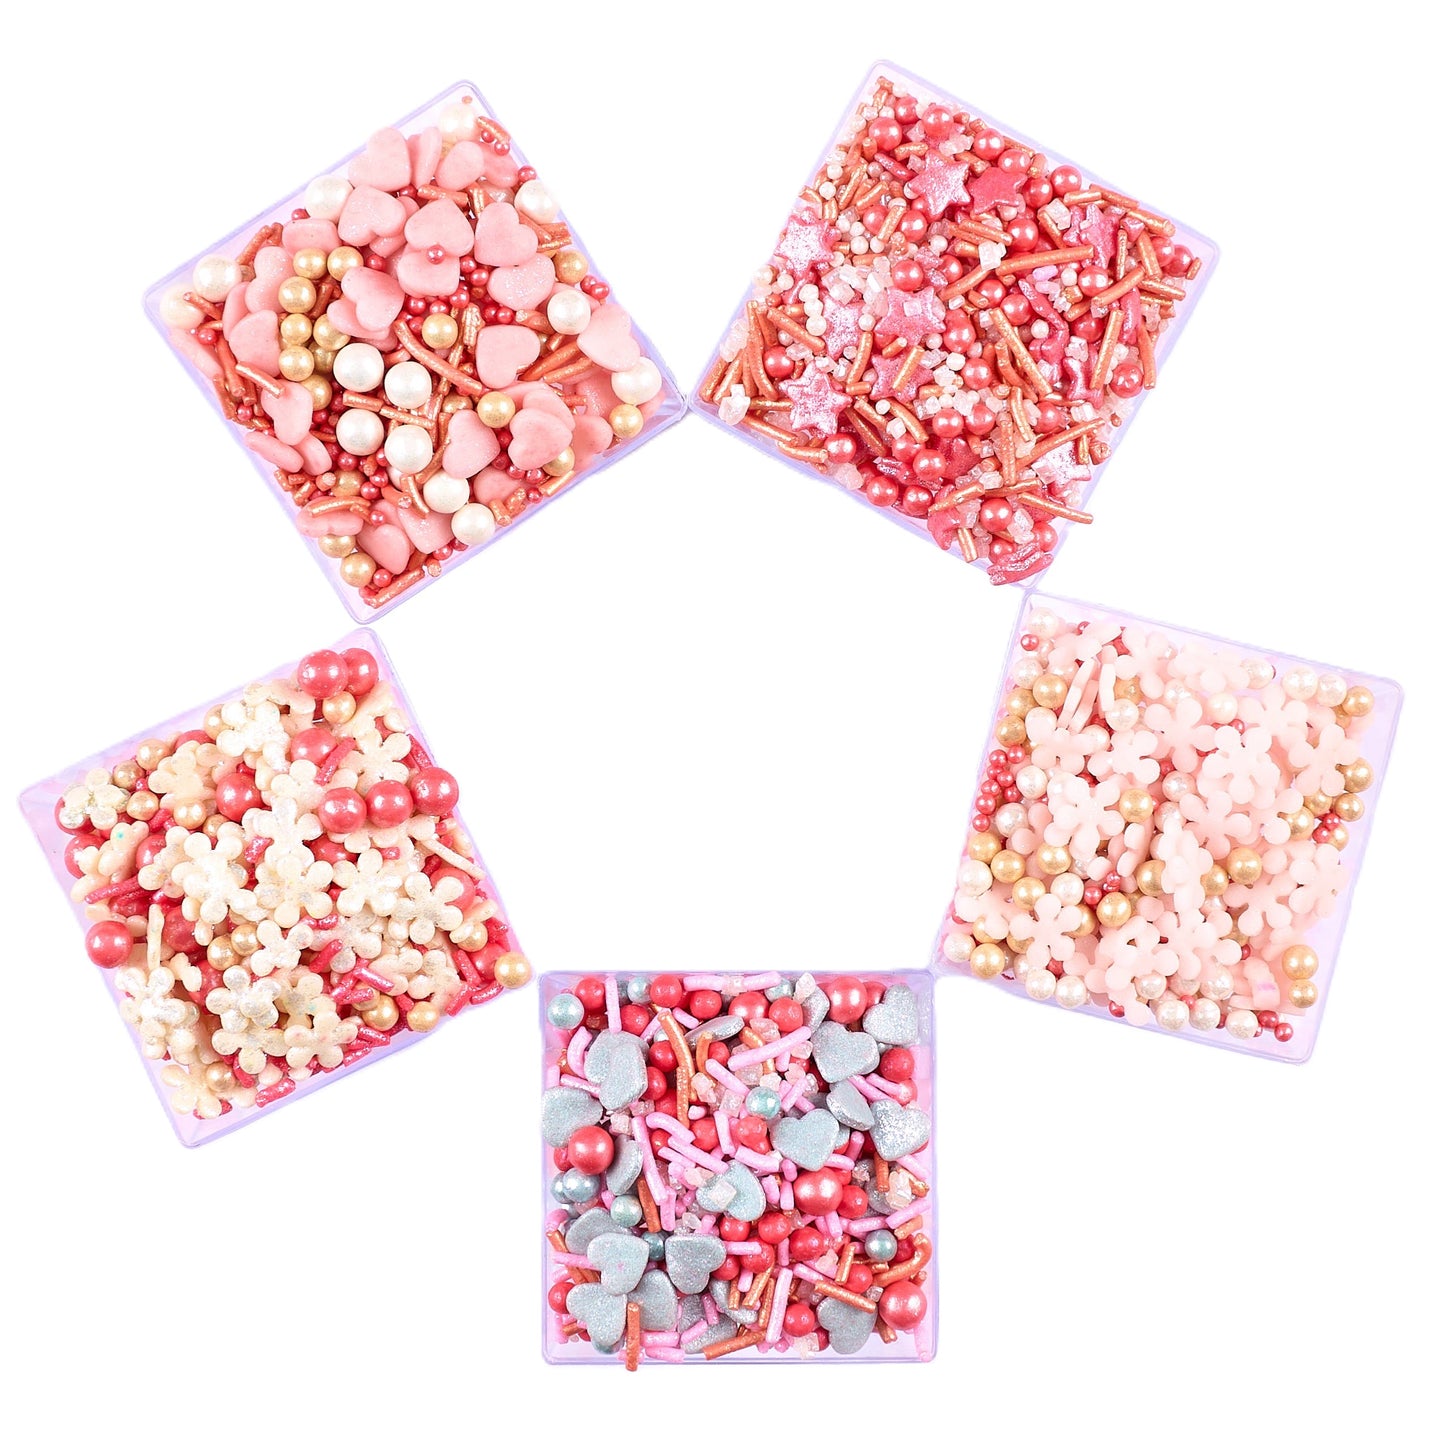 Valentine Sprinkles VS Multipack 15 - 100 gms